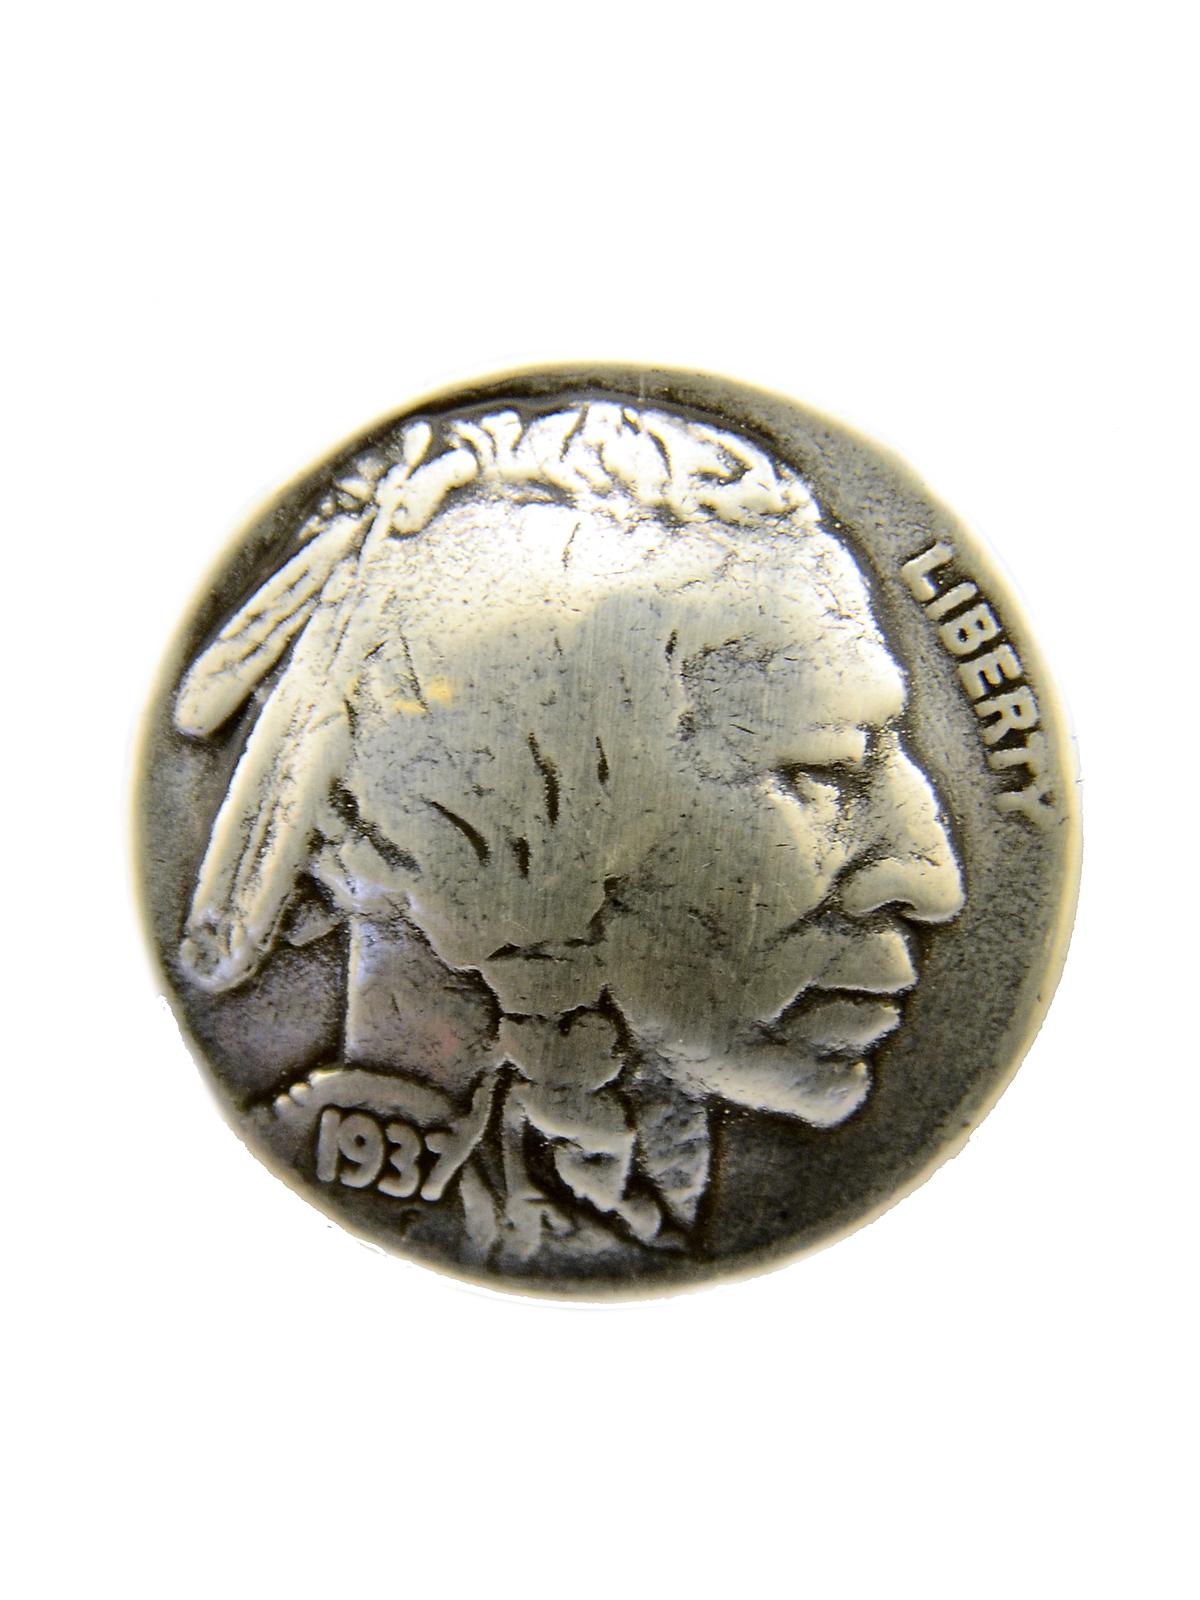 Conchos 7 8 In. Indian Nickel